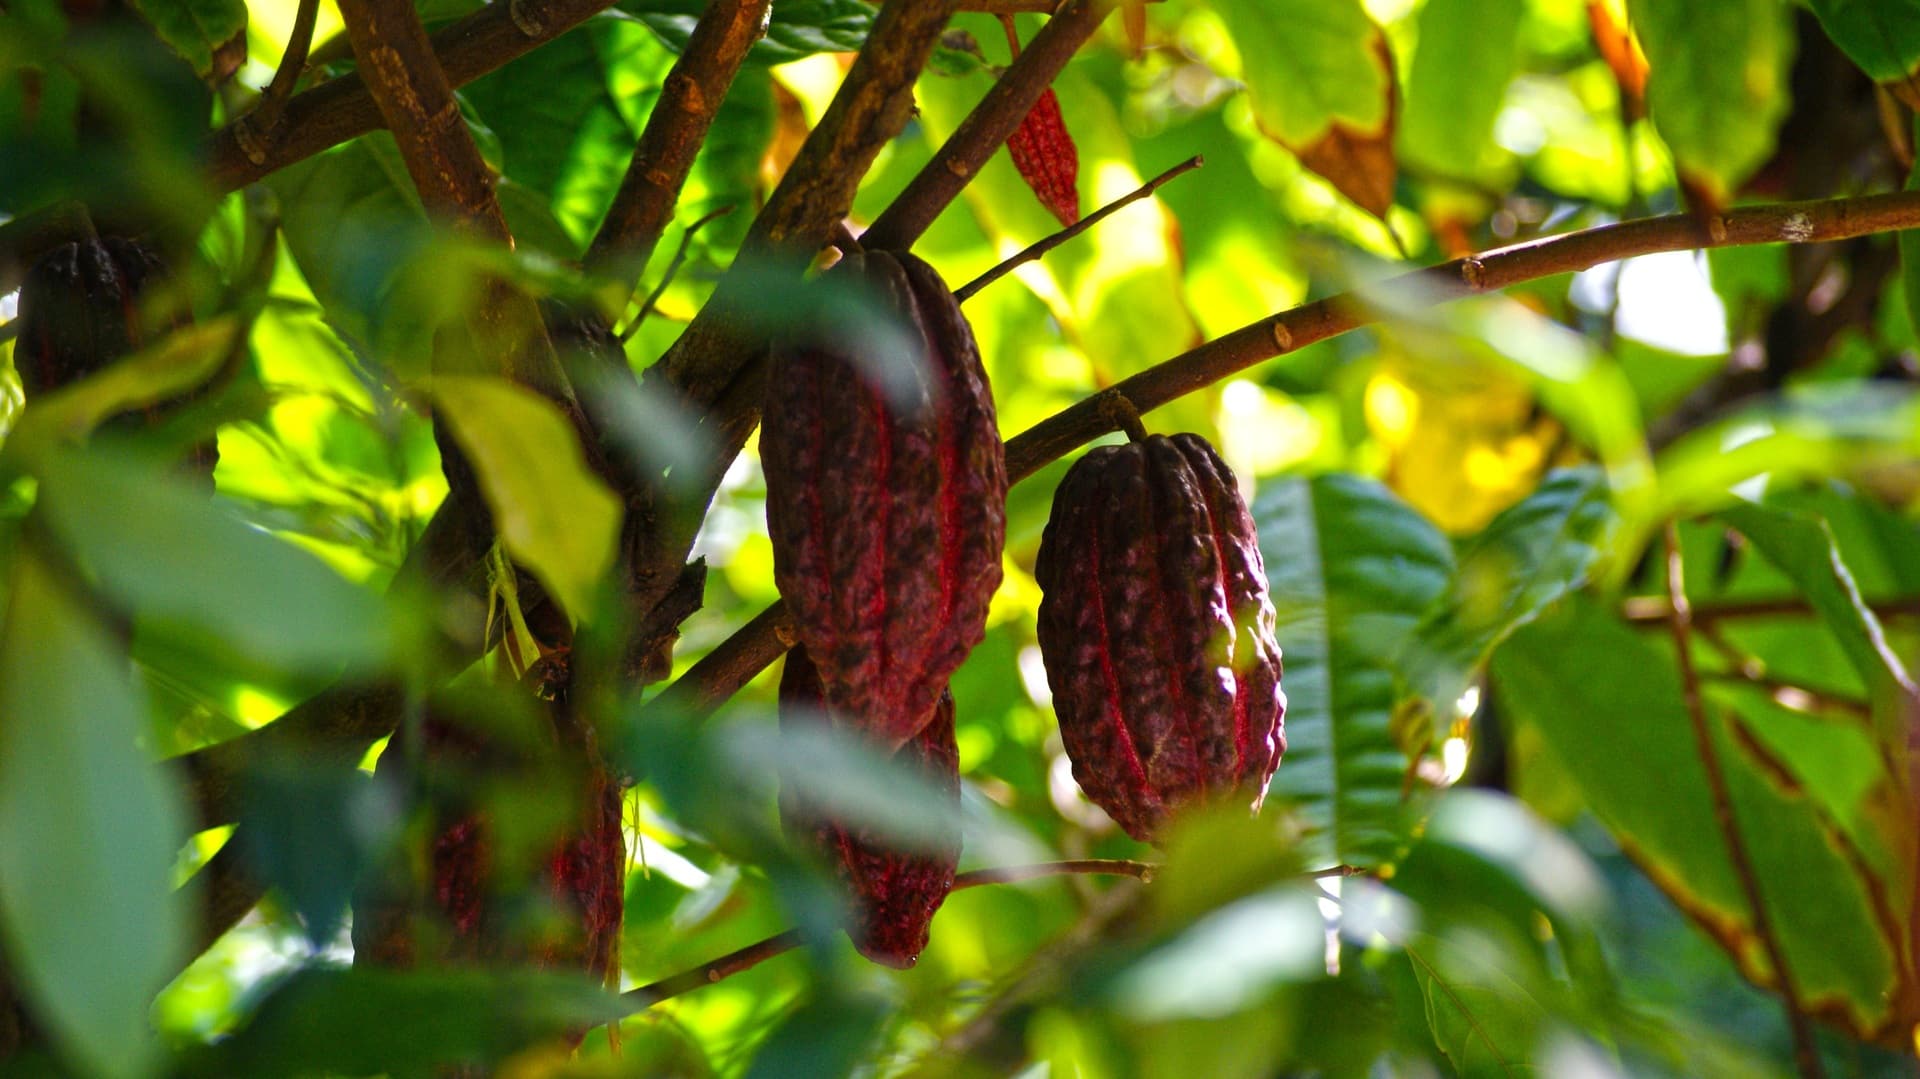 Поставки шоколада оказались под угрозой из-за вируса, который поражает деревья и семена какао